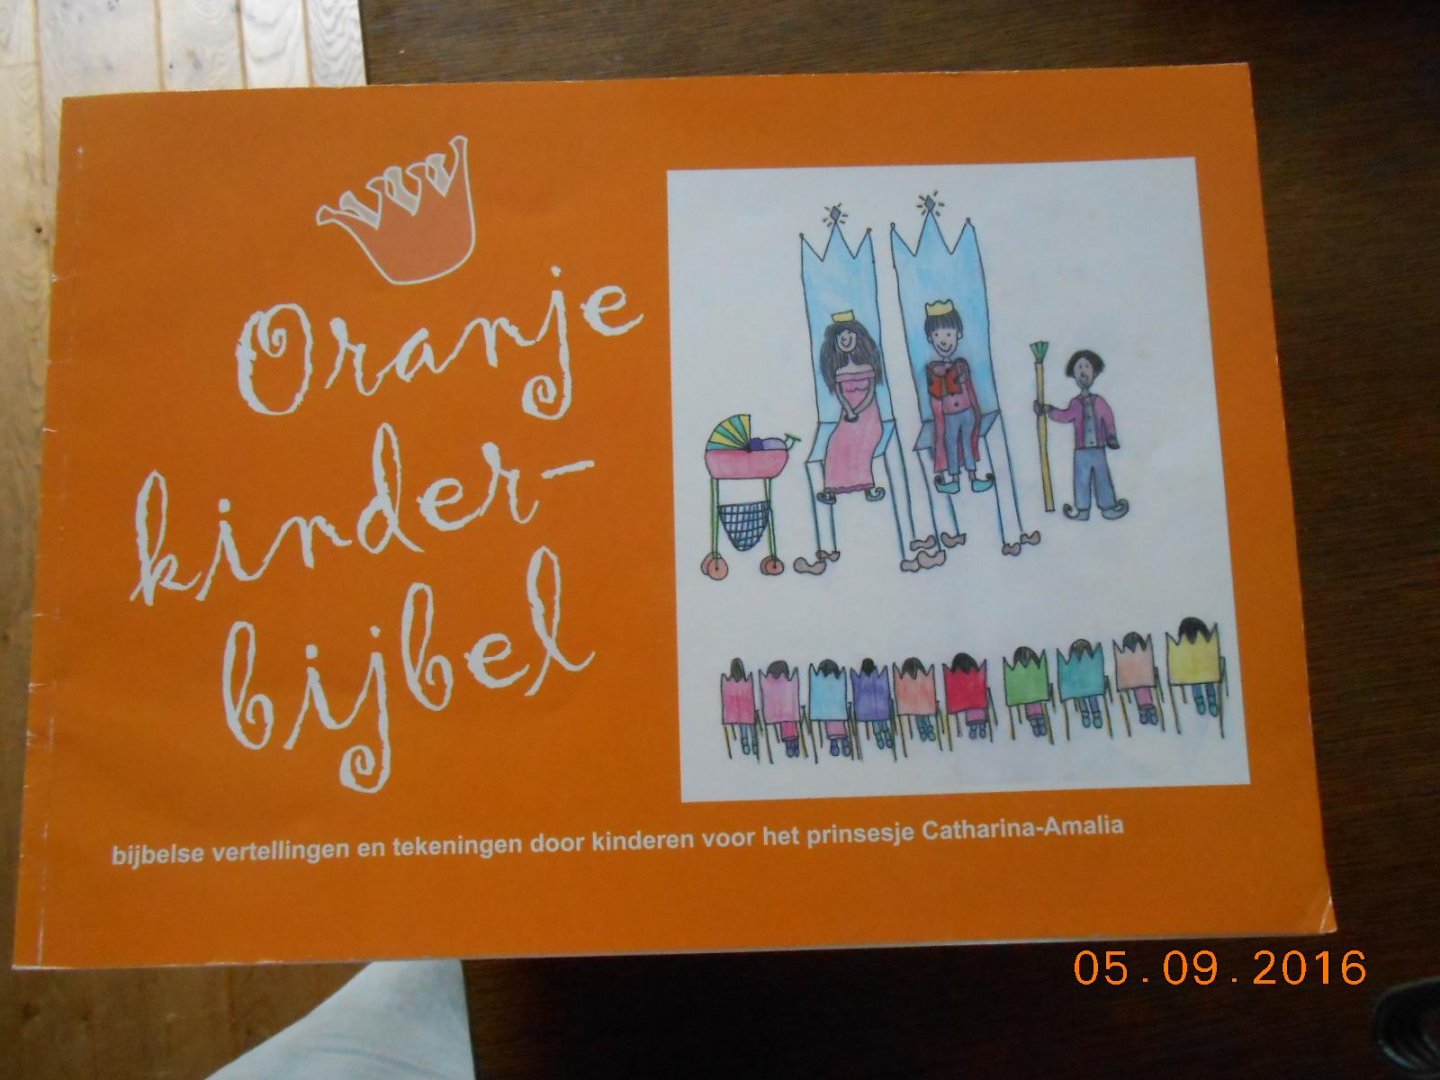  - Oranje Kinderbijbel / bijbelse vertellingen door kinderen voor het Prinsesje Catharina-Amalia